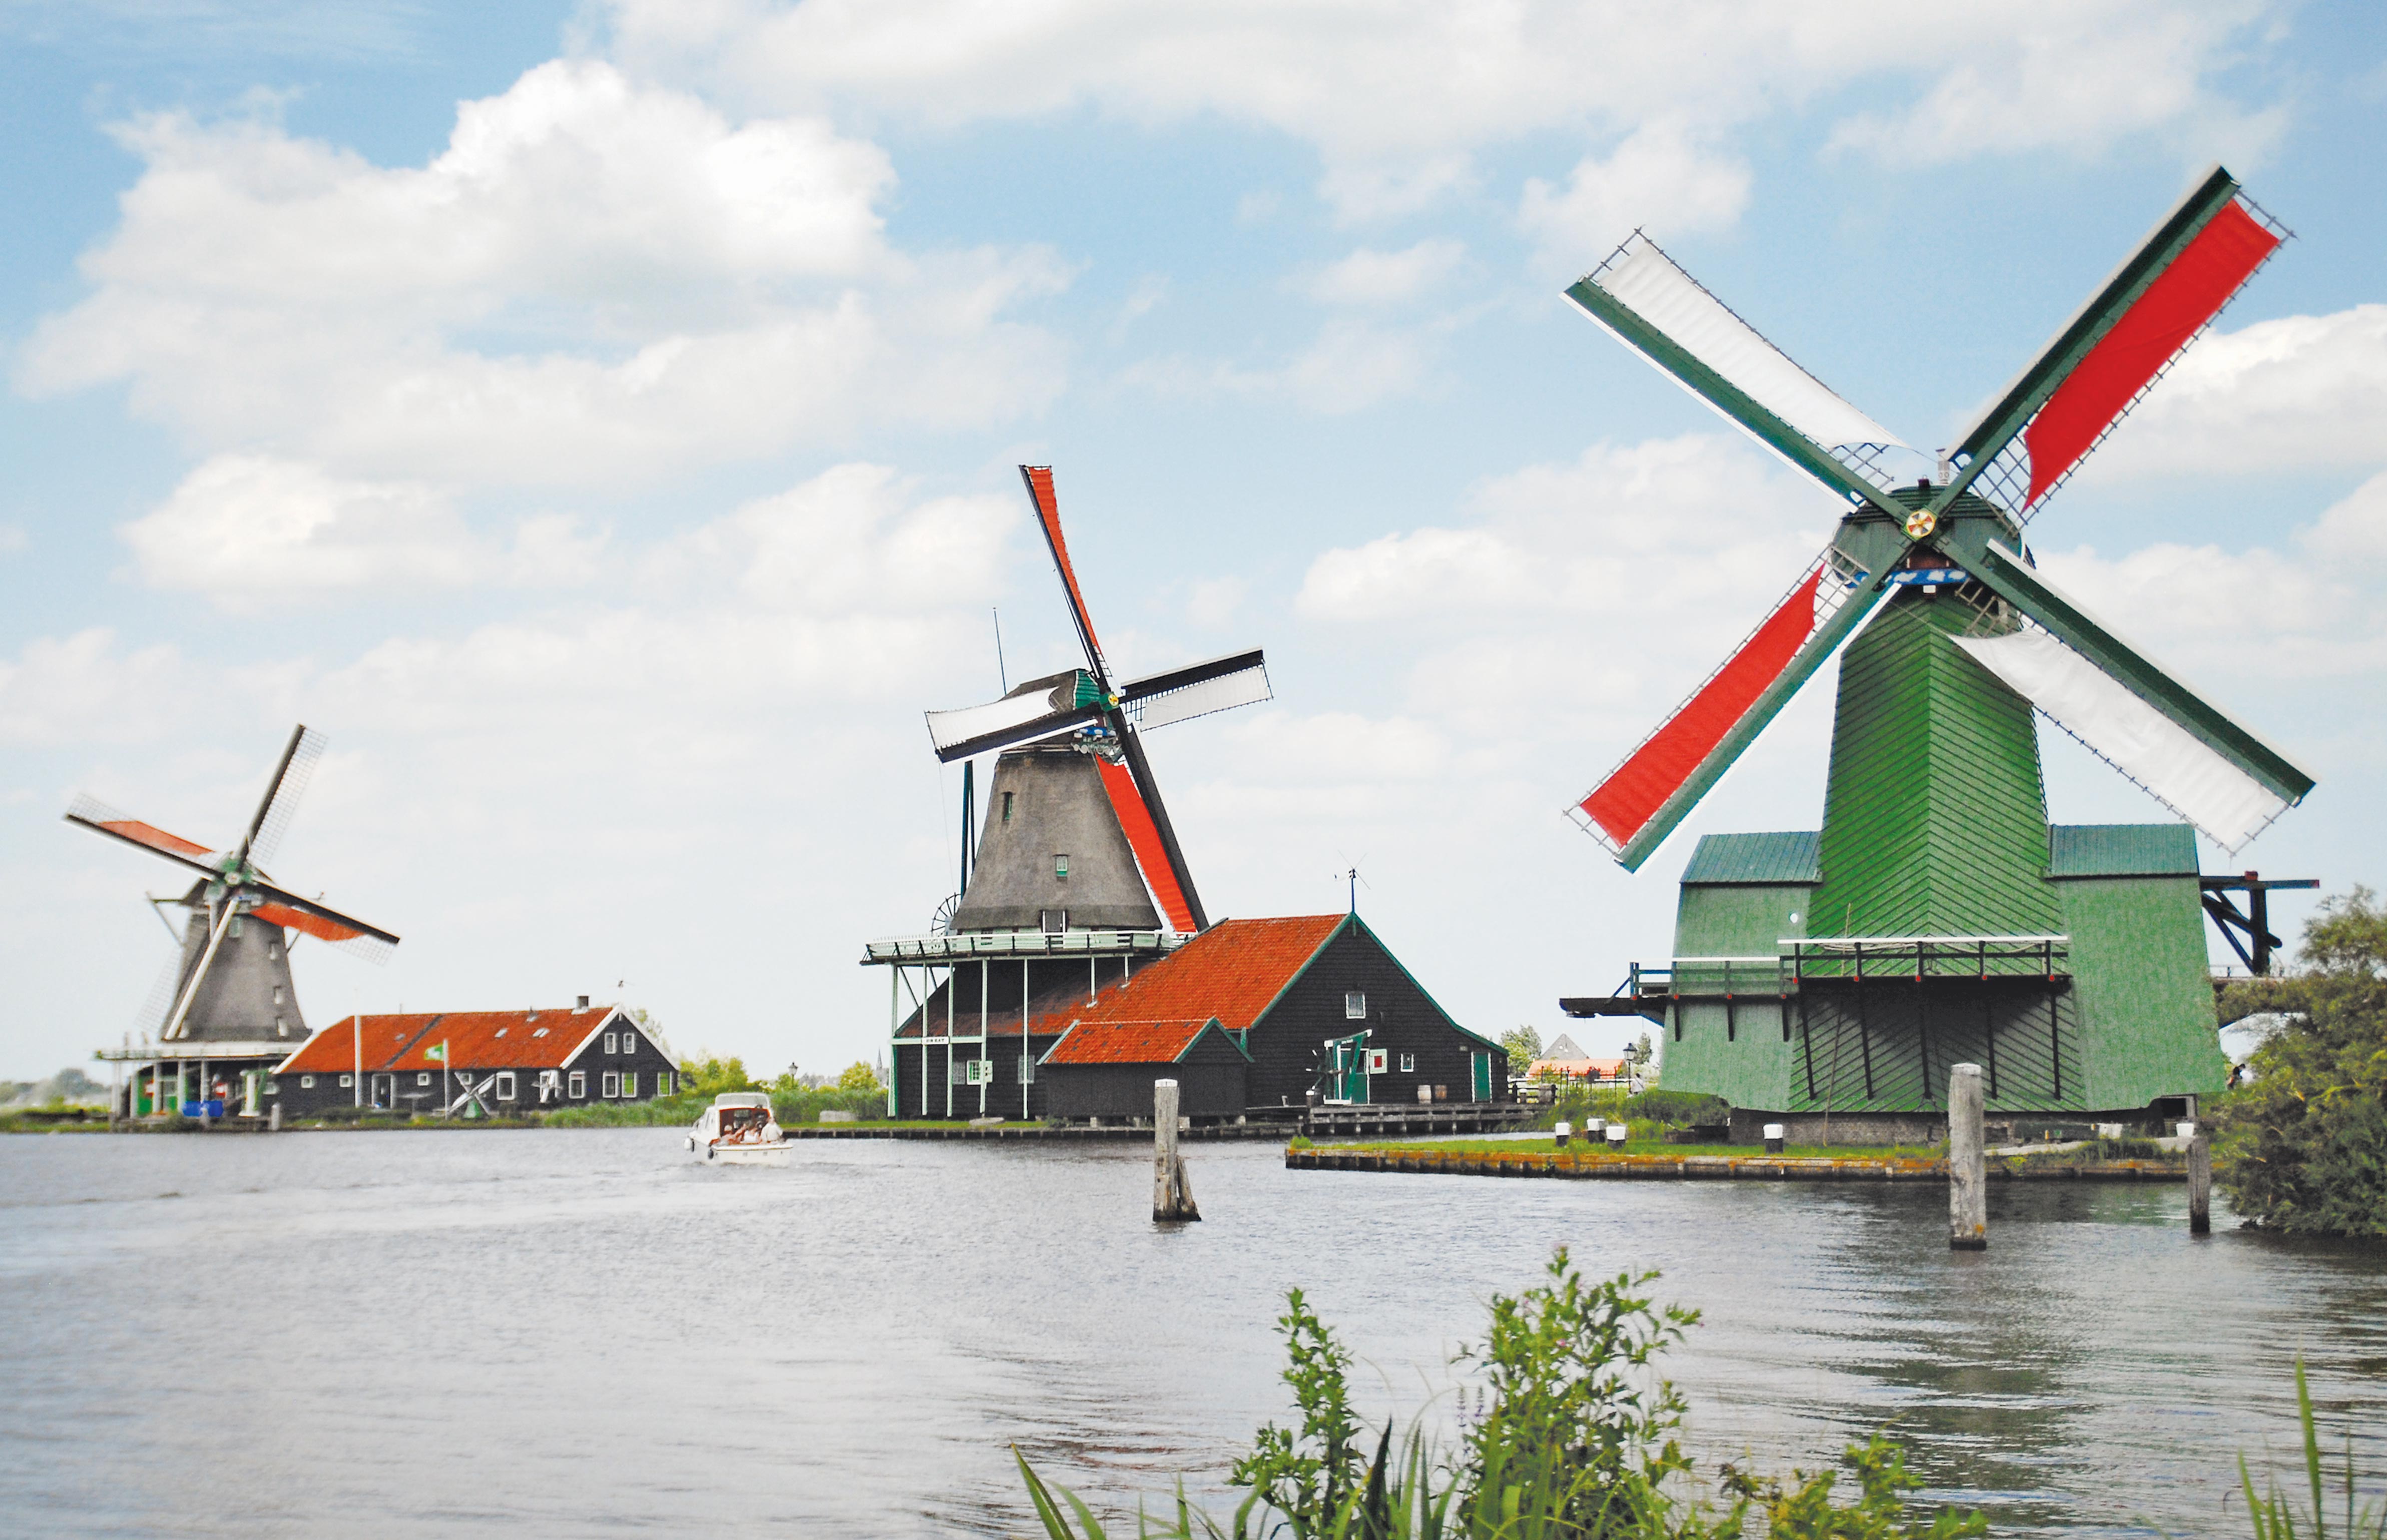 O parque dos moinhos de vento na Holanda